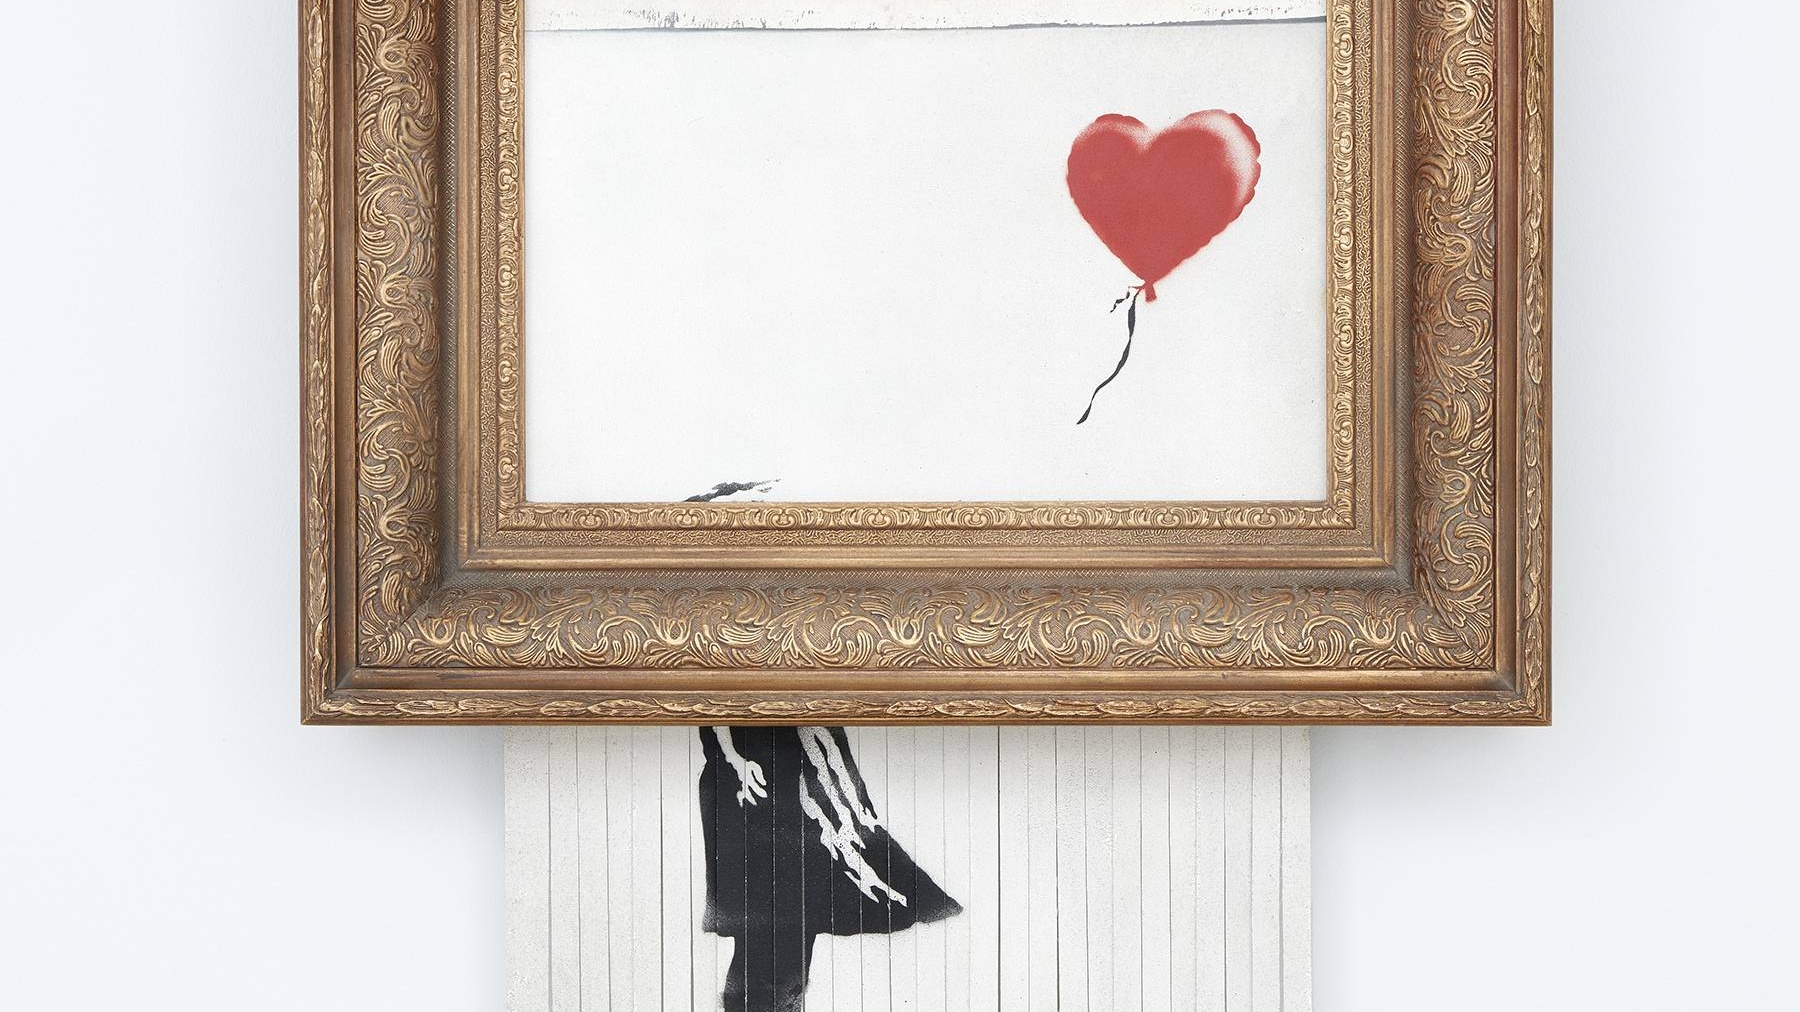 Love is in the Bin, by Banksy